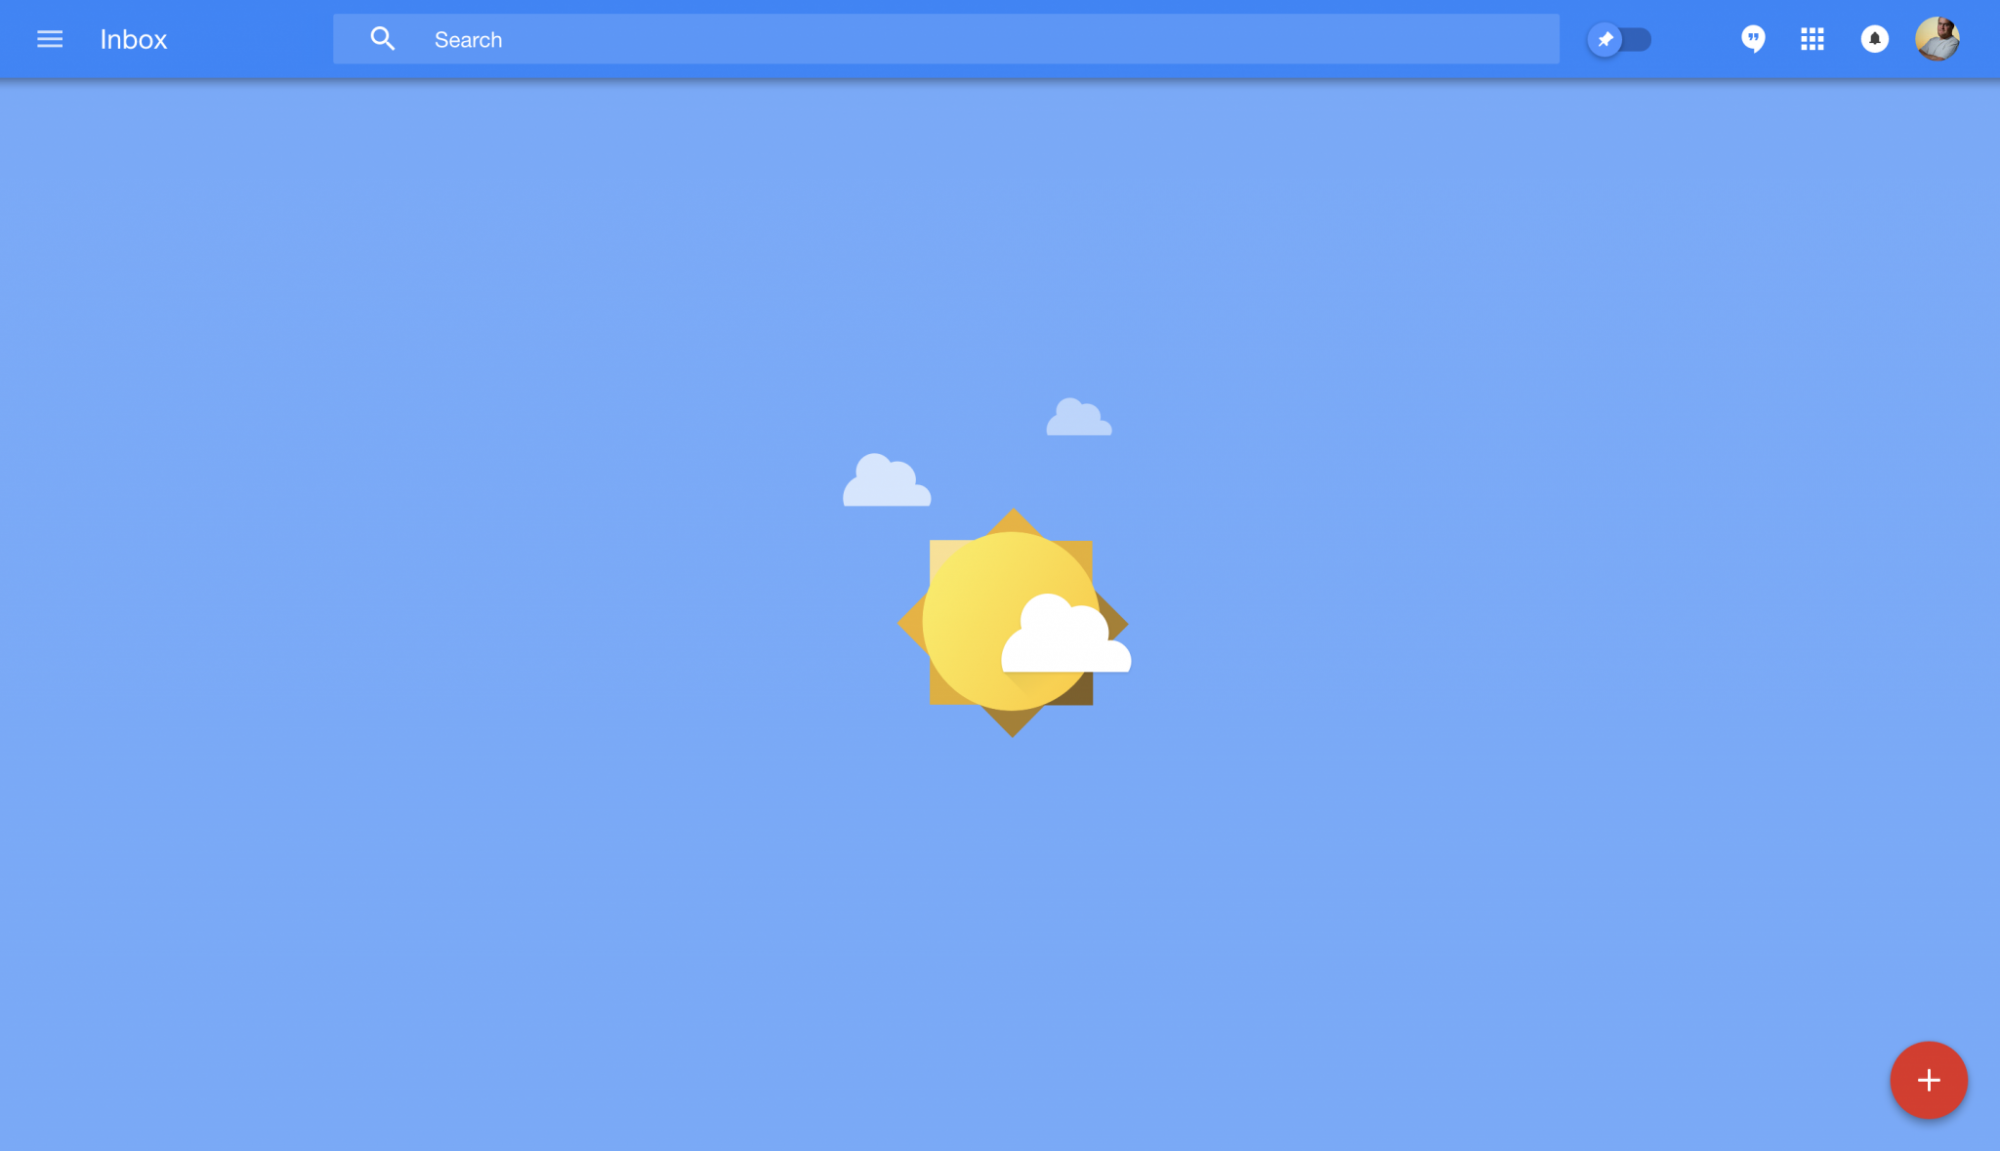 Inbox Zero - The Big Yellow One is the Sun